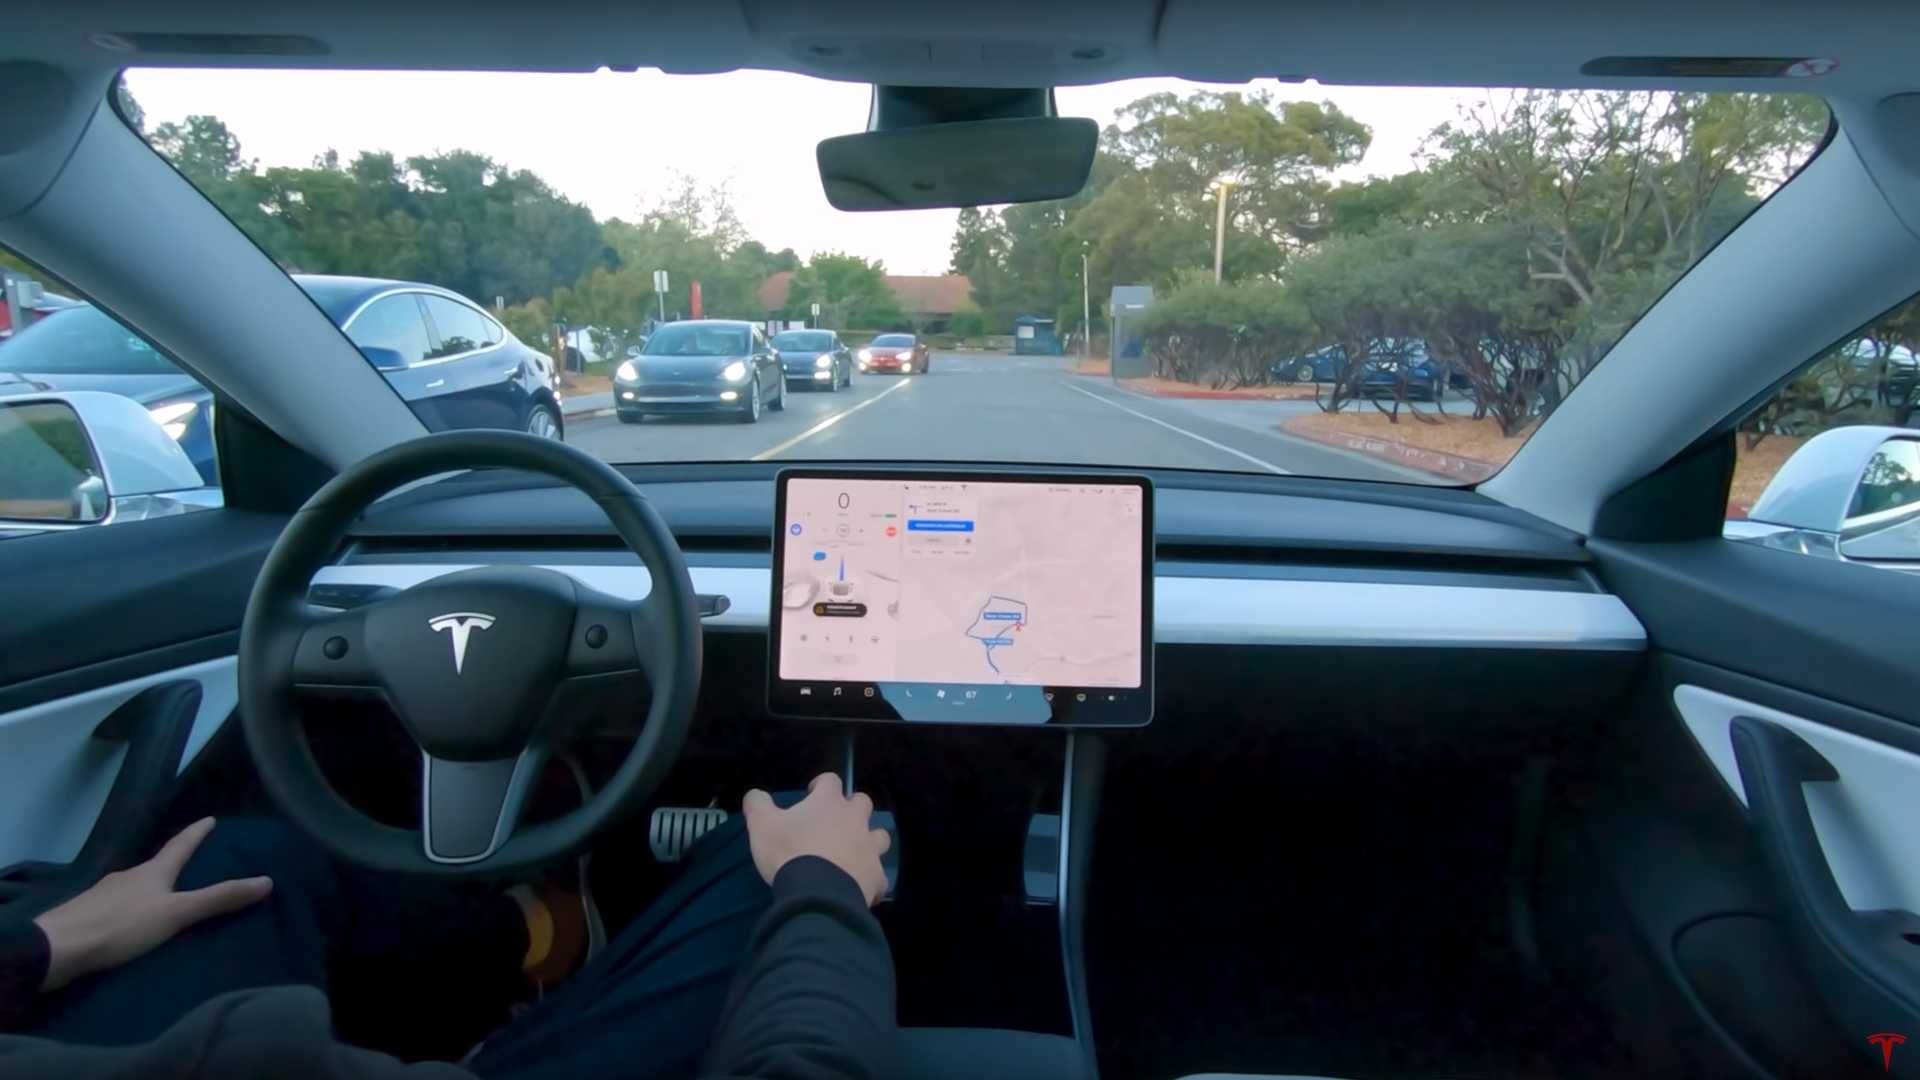 tesla full self driving - قابلیت خودران کامل اتومبیل تسلا هفته ی آینده آزمایش می شود